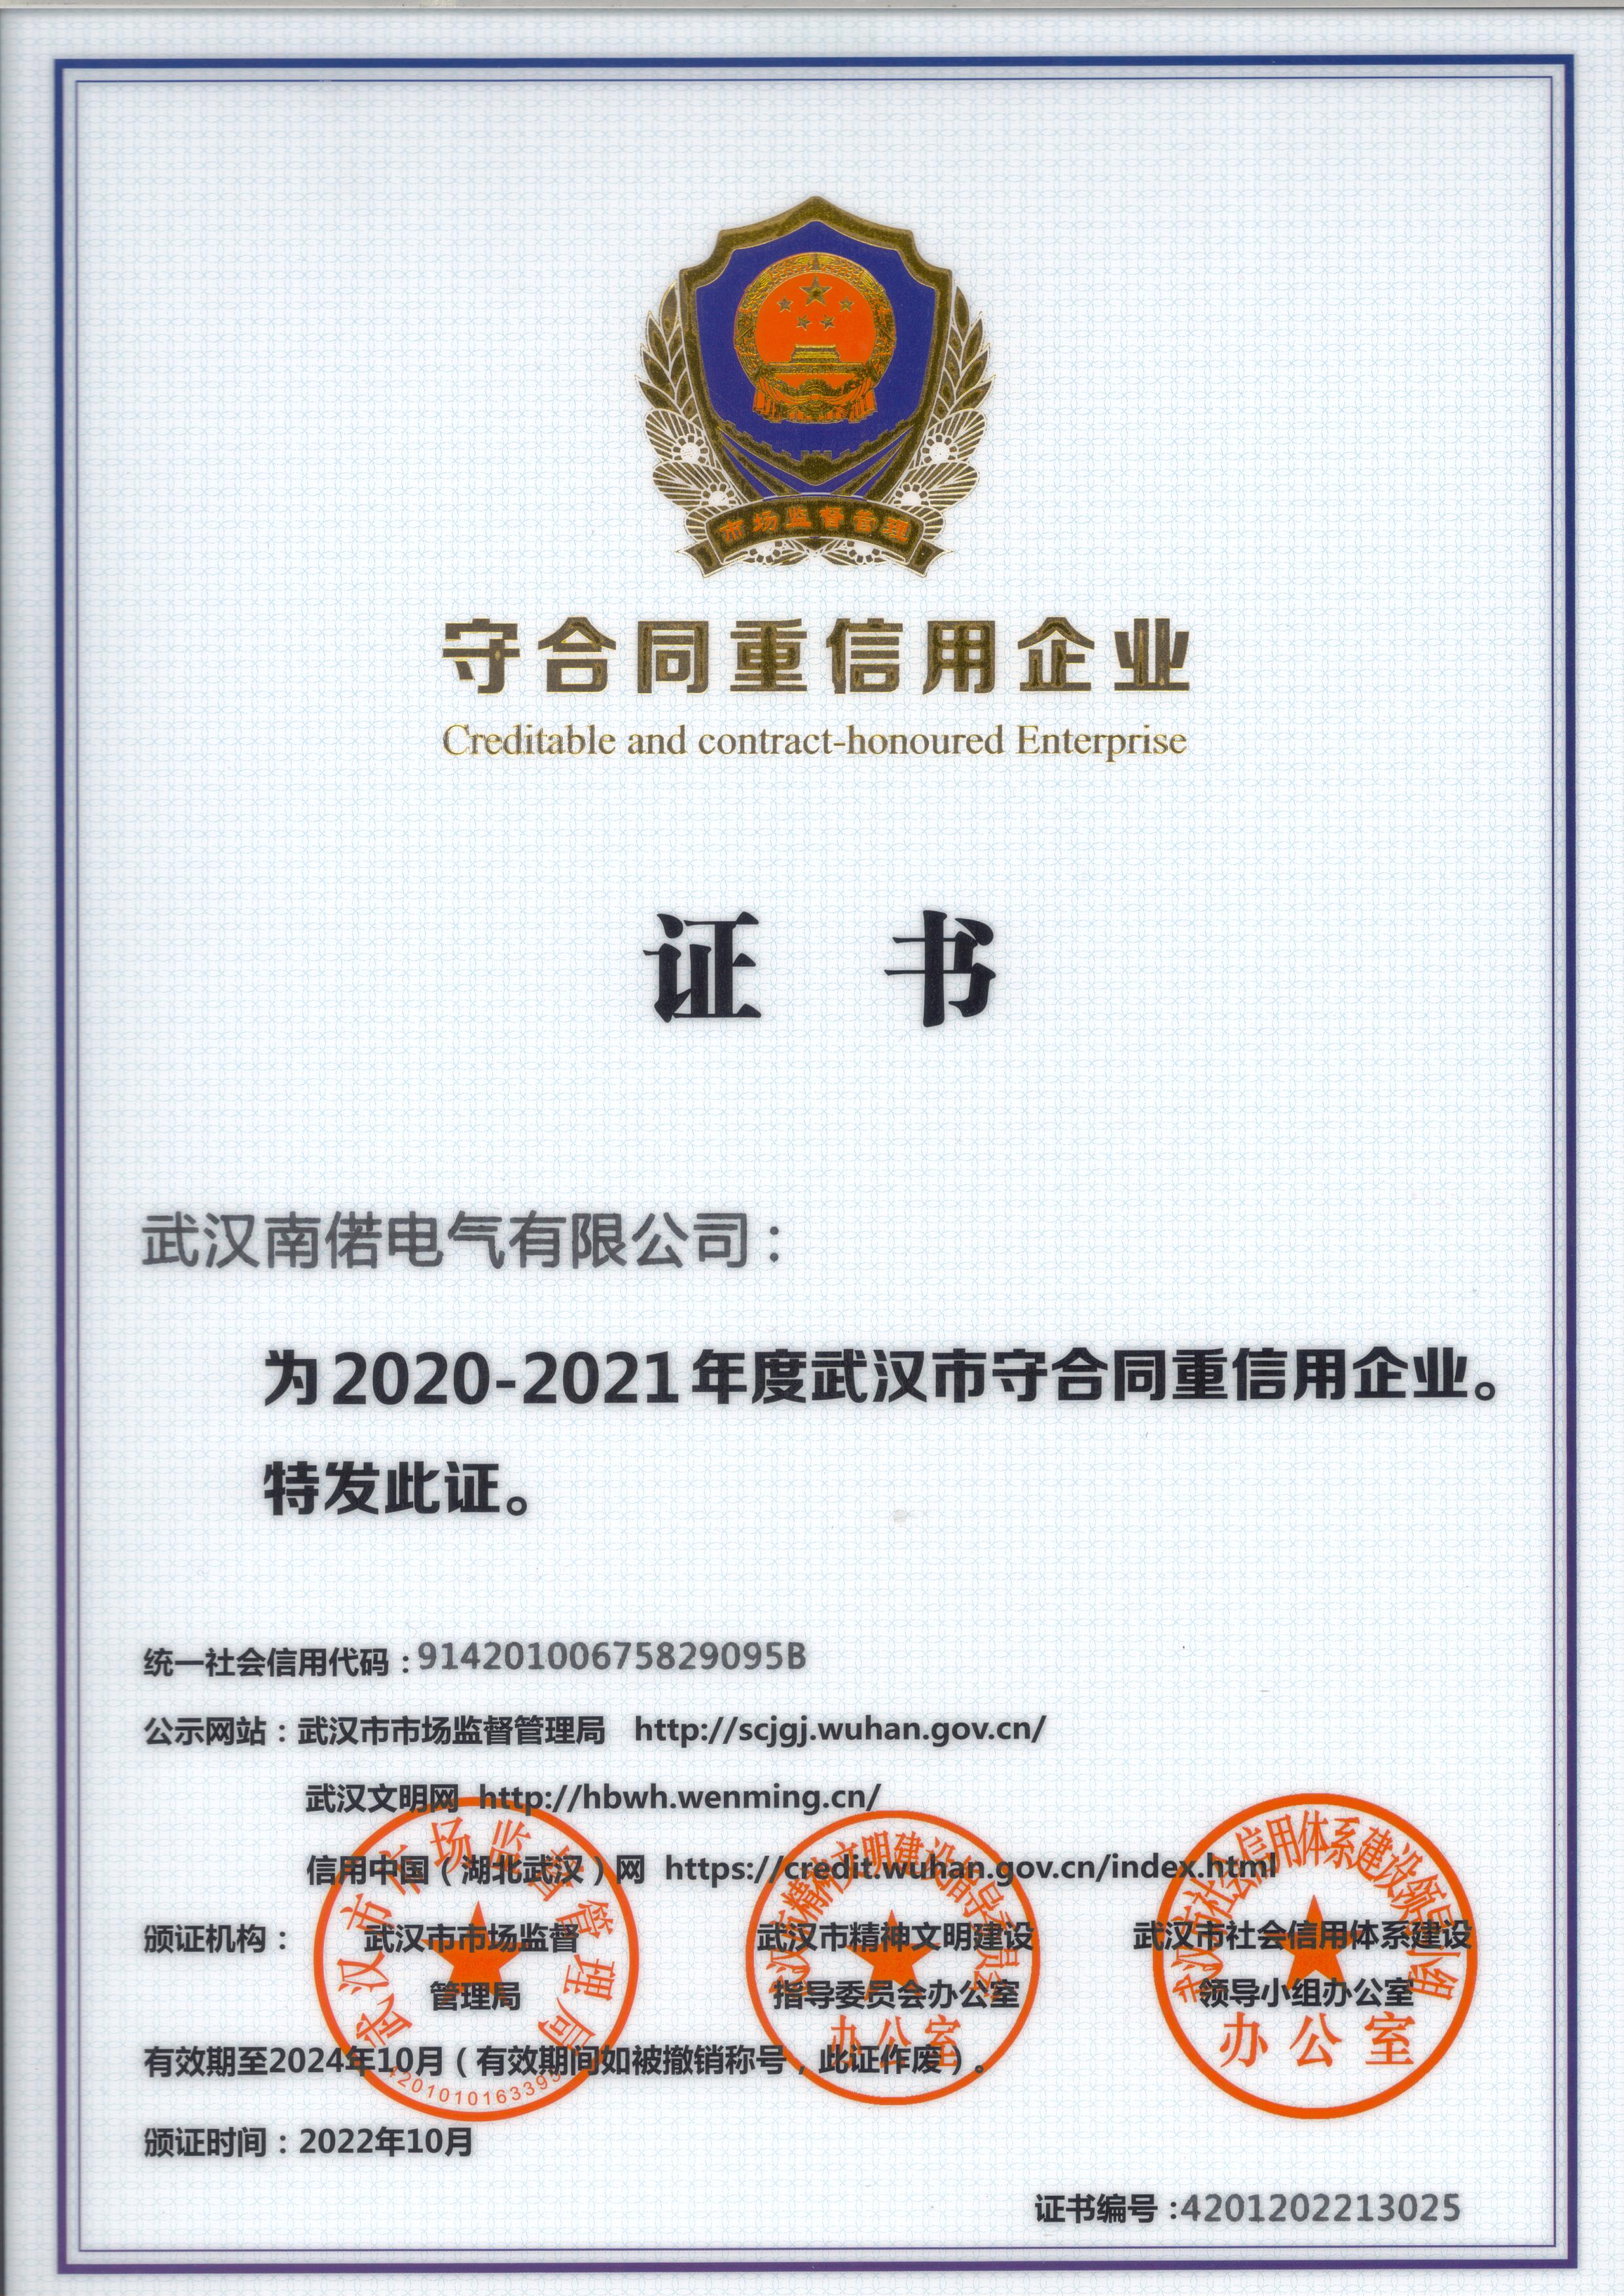 2020-2021年度守合同重信用企业证书